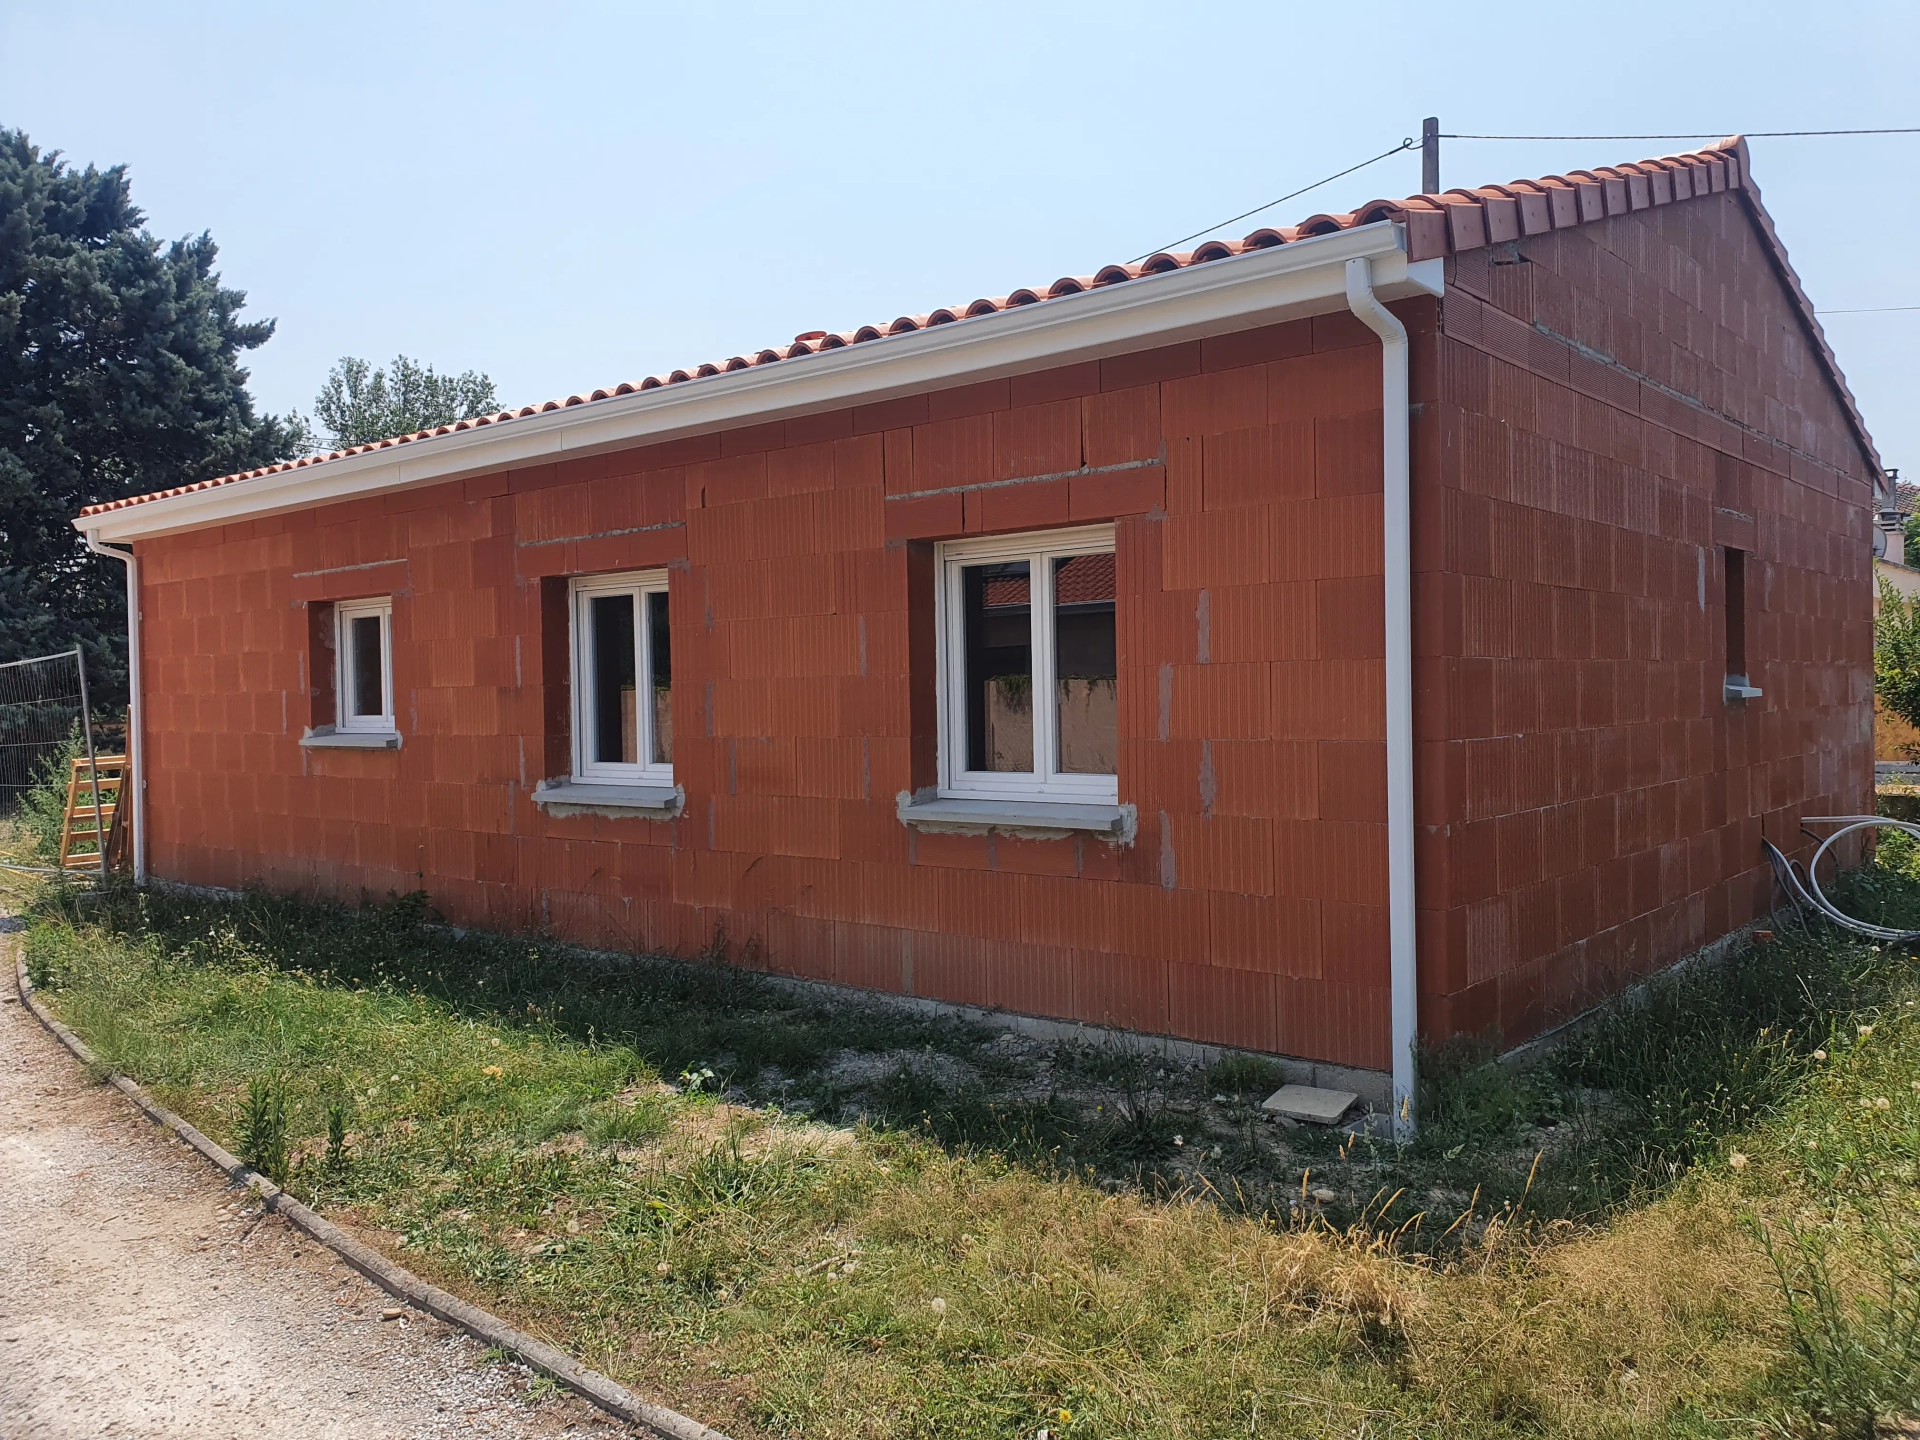 Réalisation d'une habitation individuelle sur le secteur de Roques sur Garonne